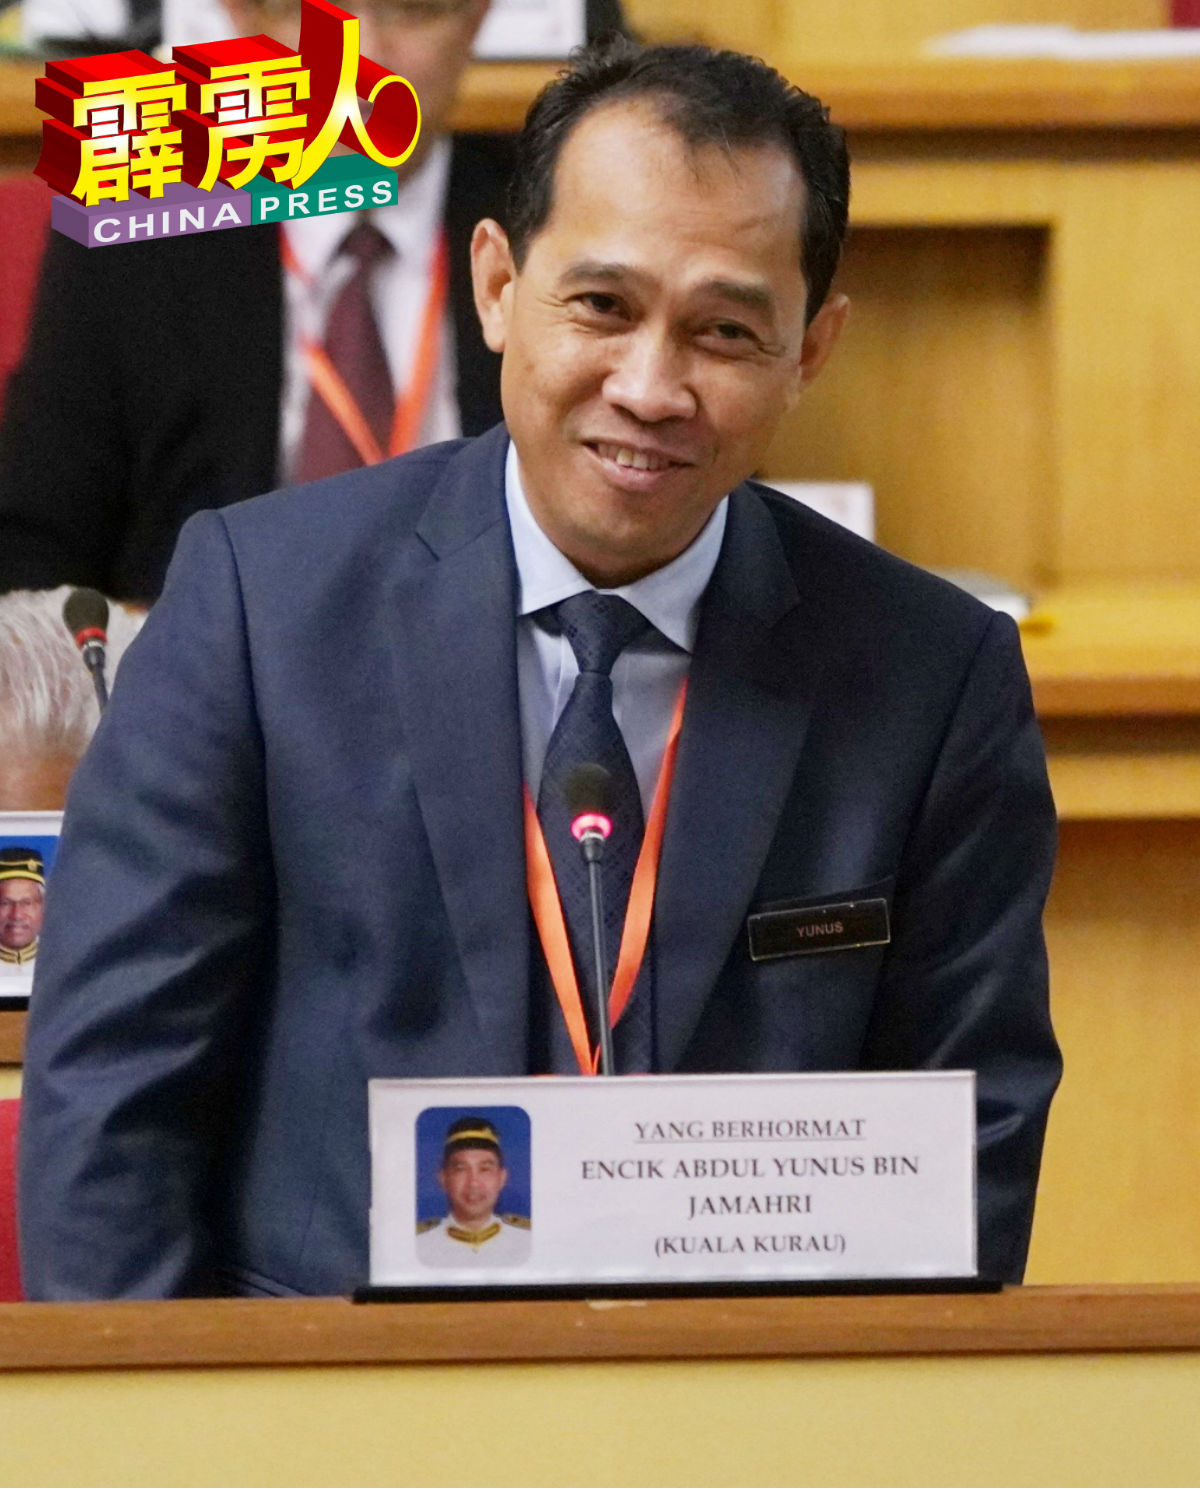 霹雳州行政议员尤努斯在议会上发言。